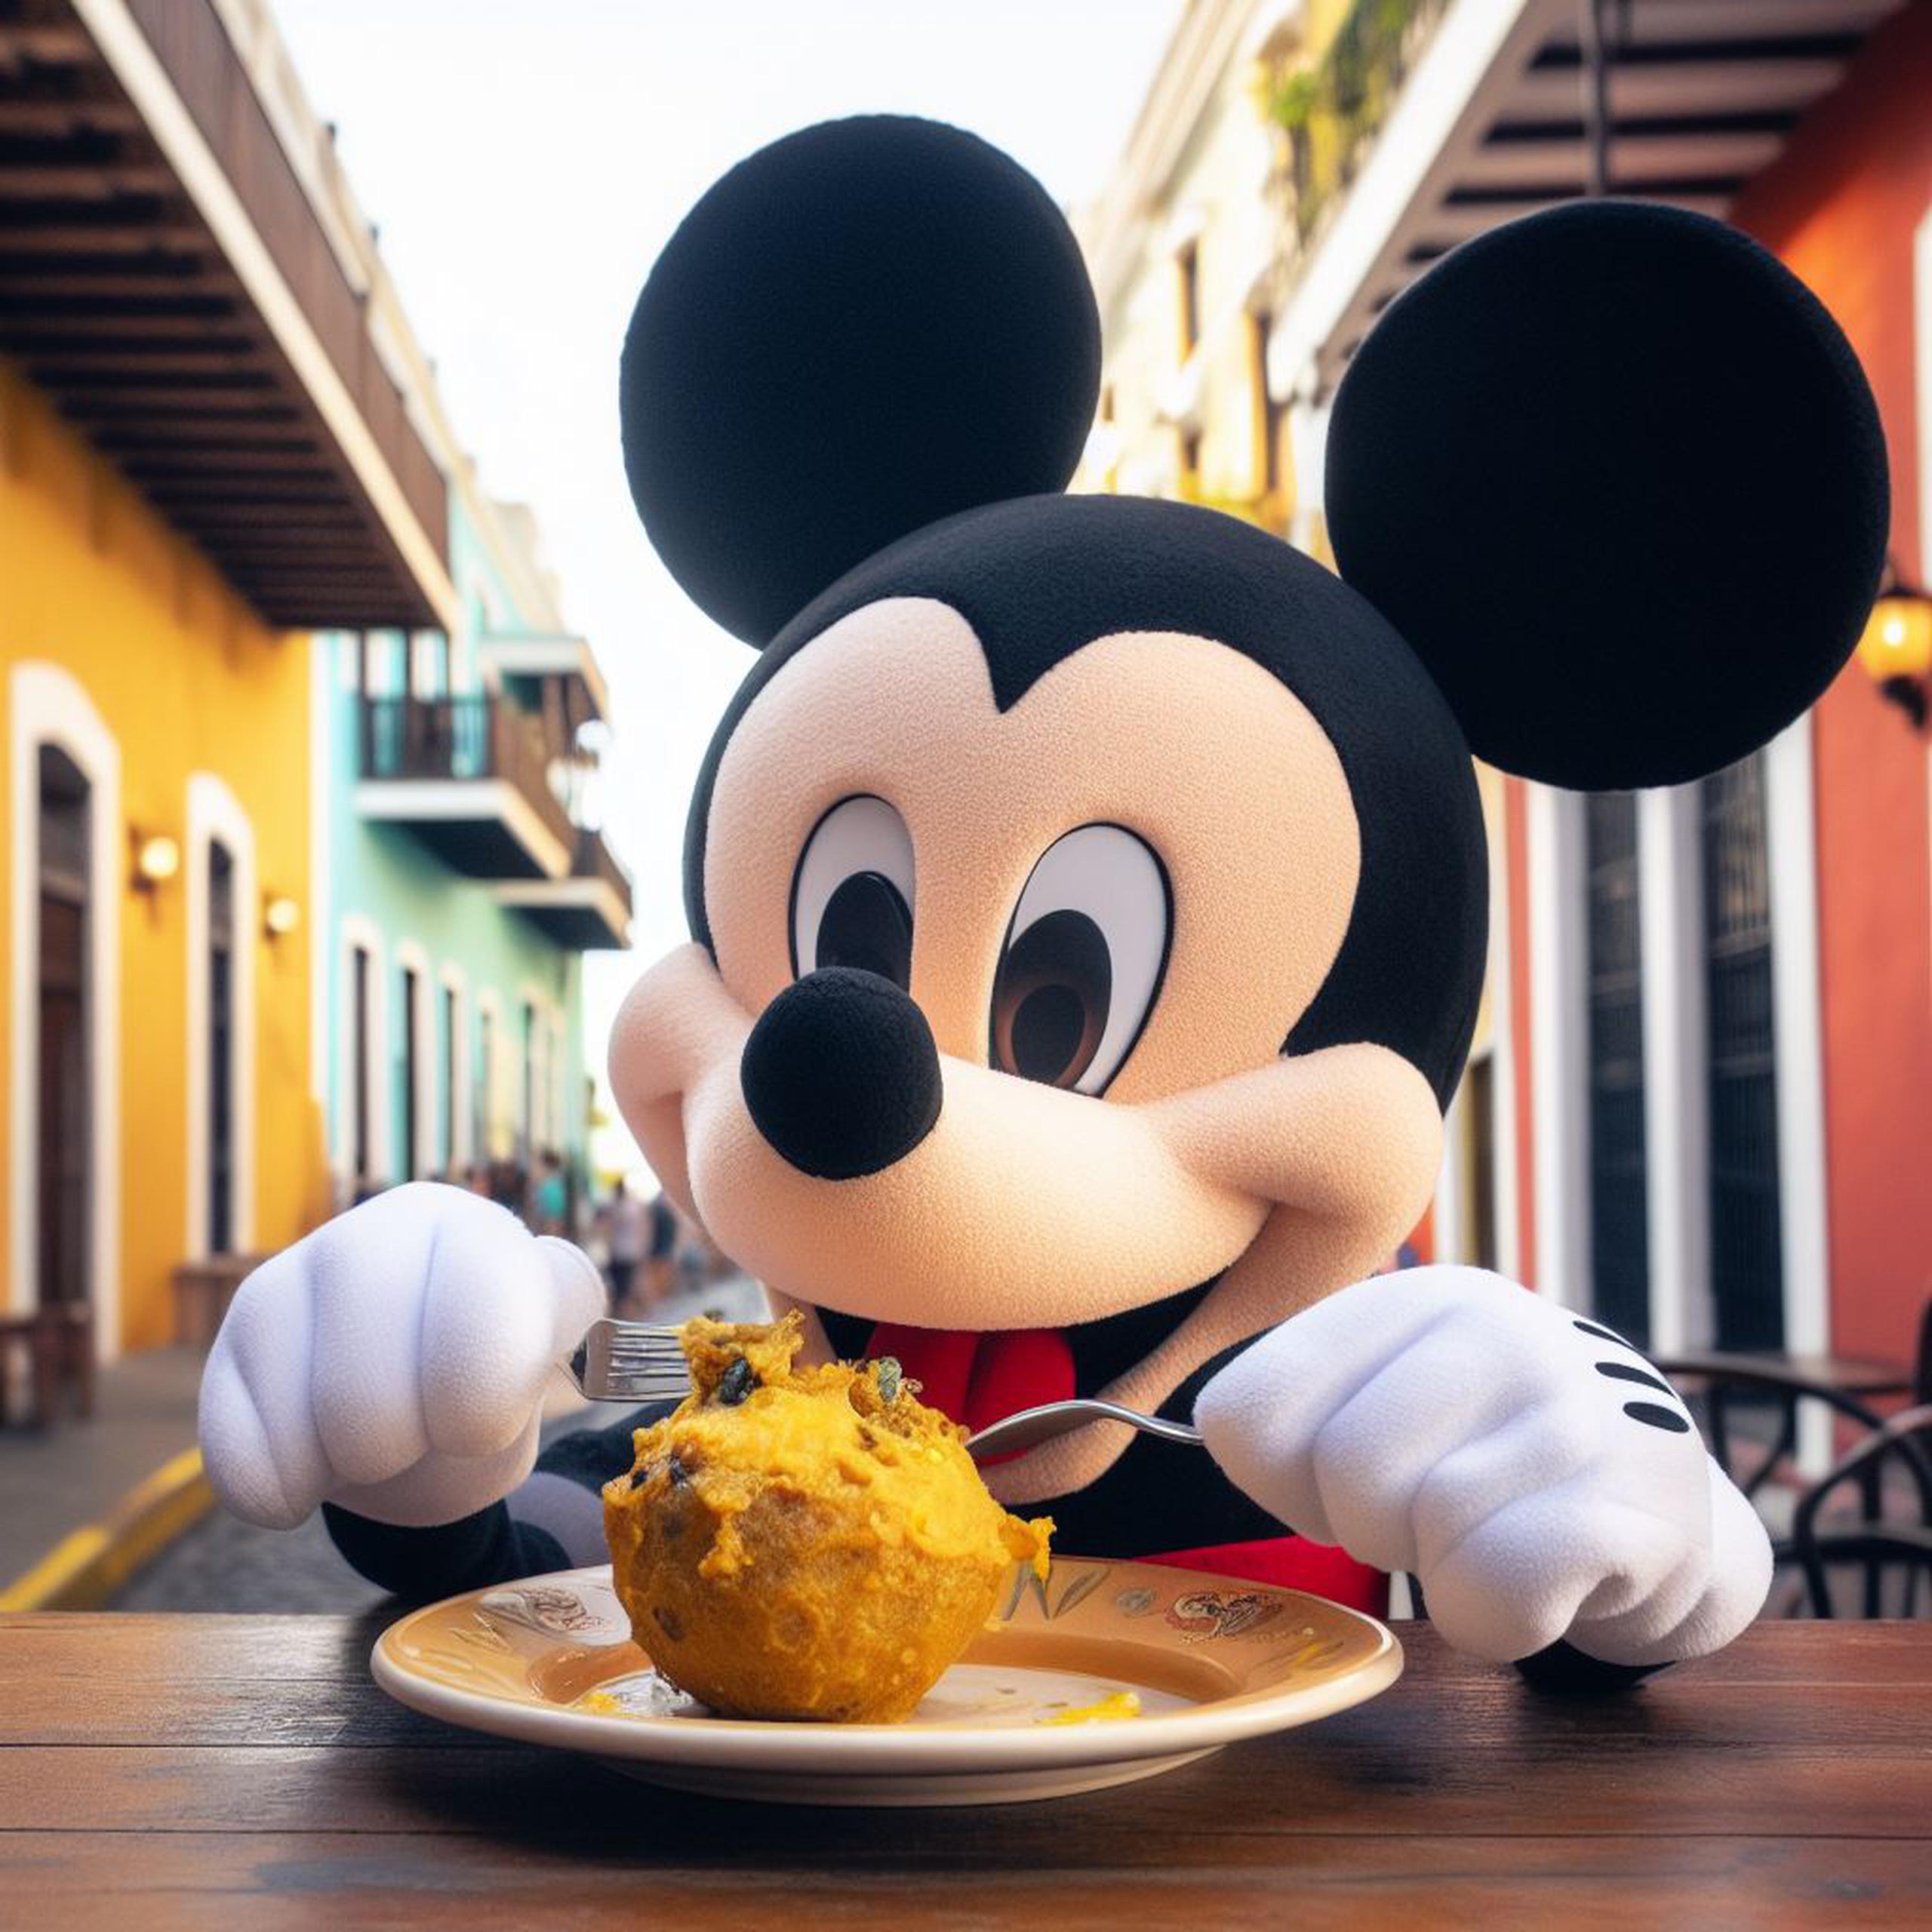 Imágenes producidas con el texto: “Mickey Mouse comiendo mofongo en el Viejo San Juan, Puerto Rico, estilo Disney Pixar”.